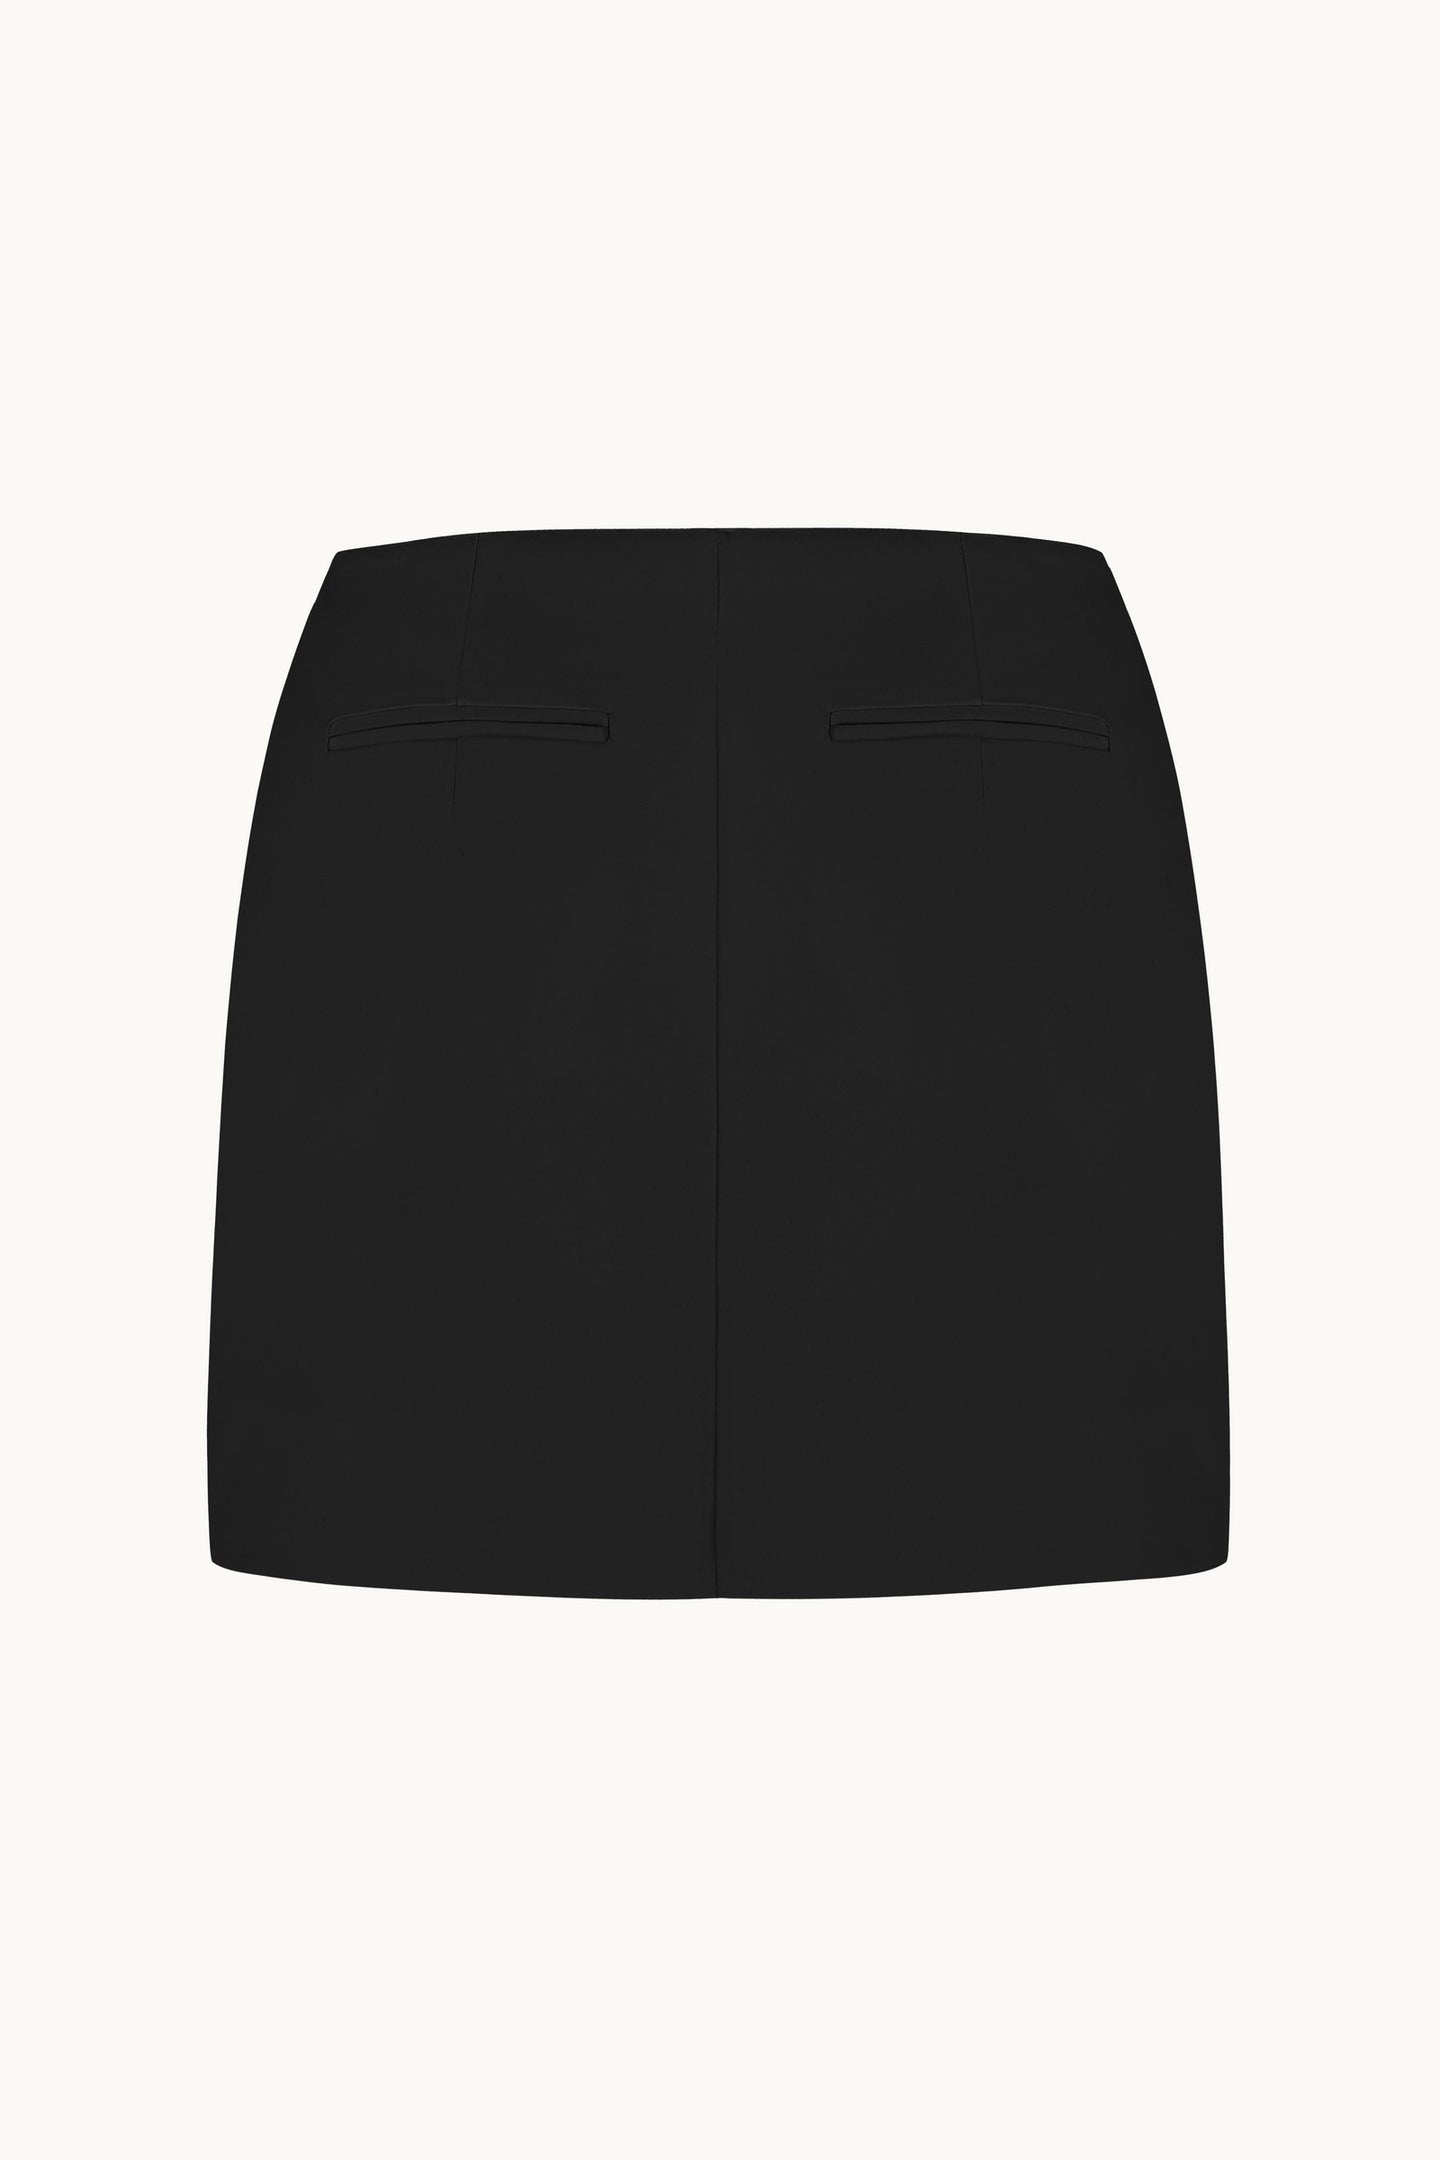 Rosy black skirt back view